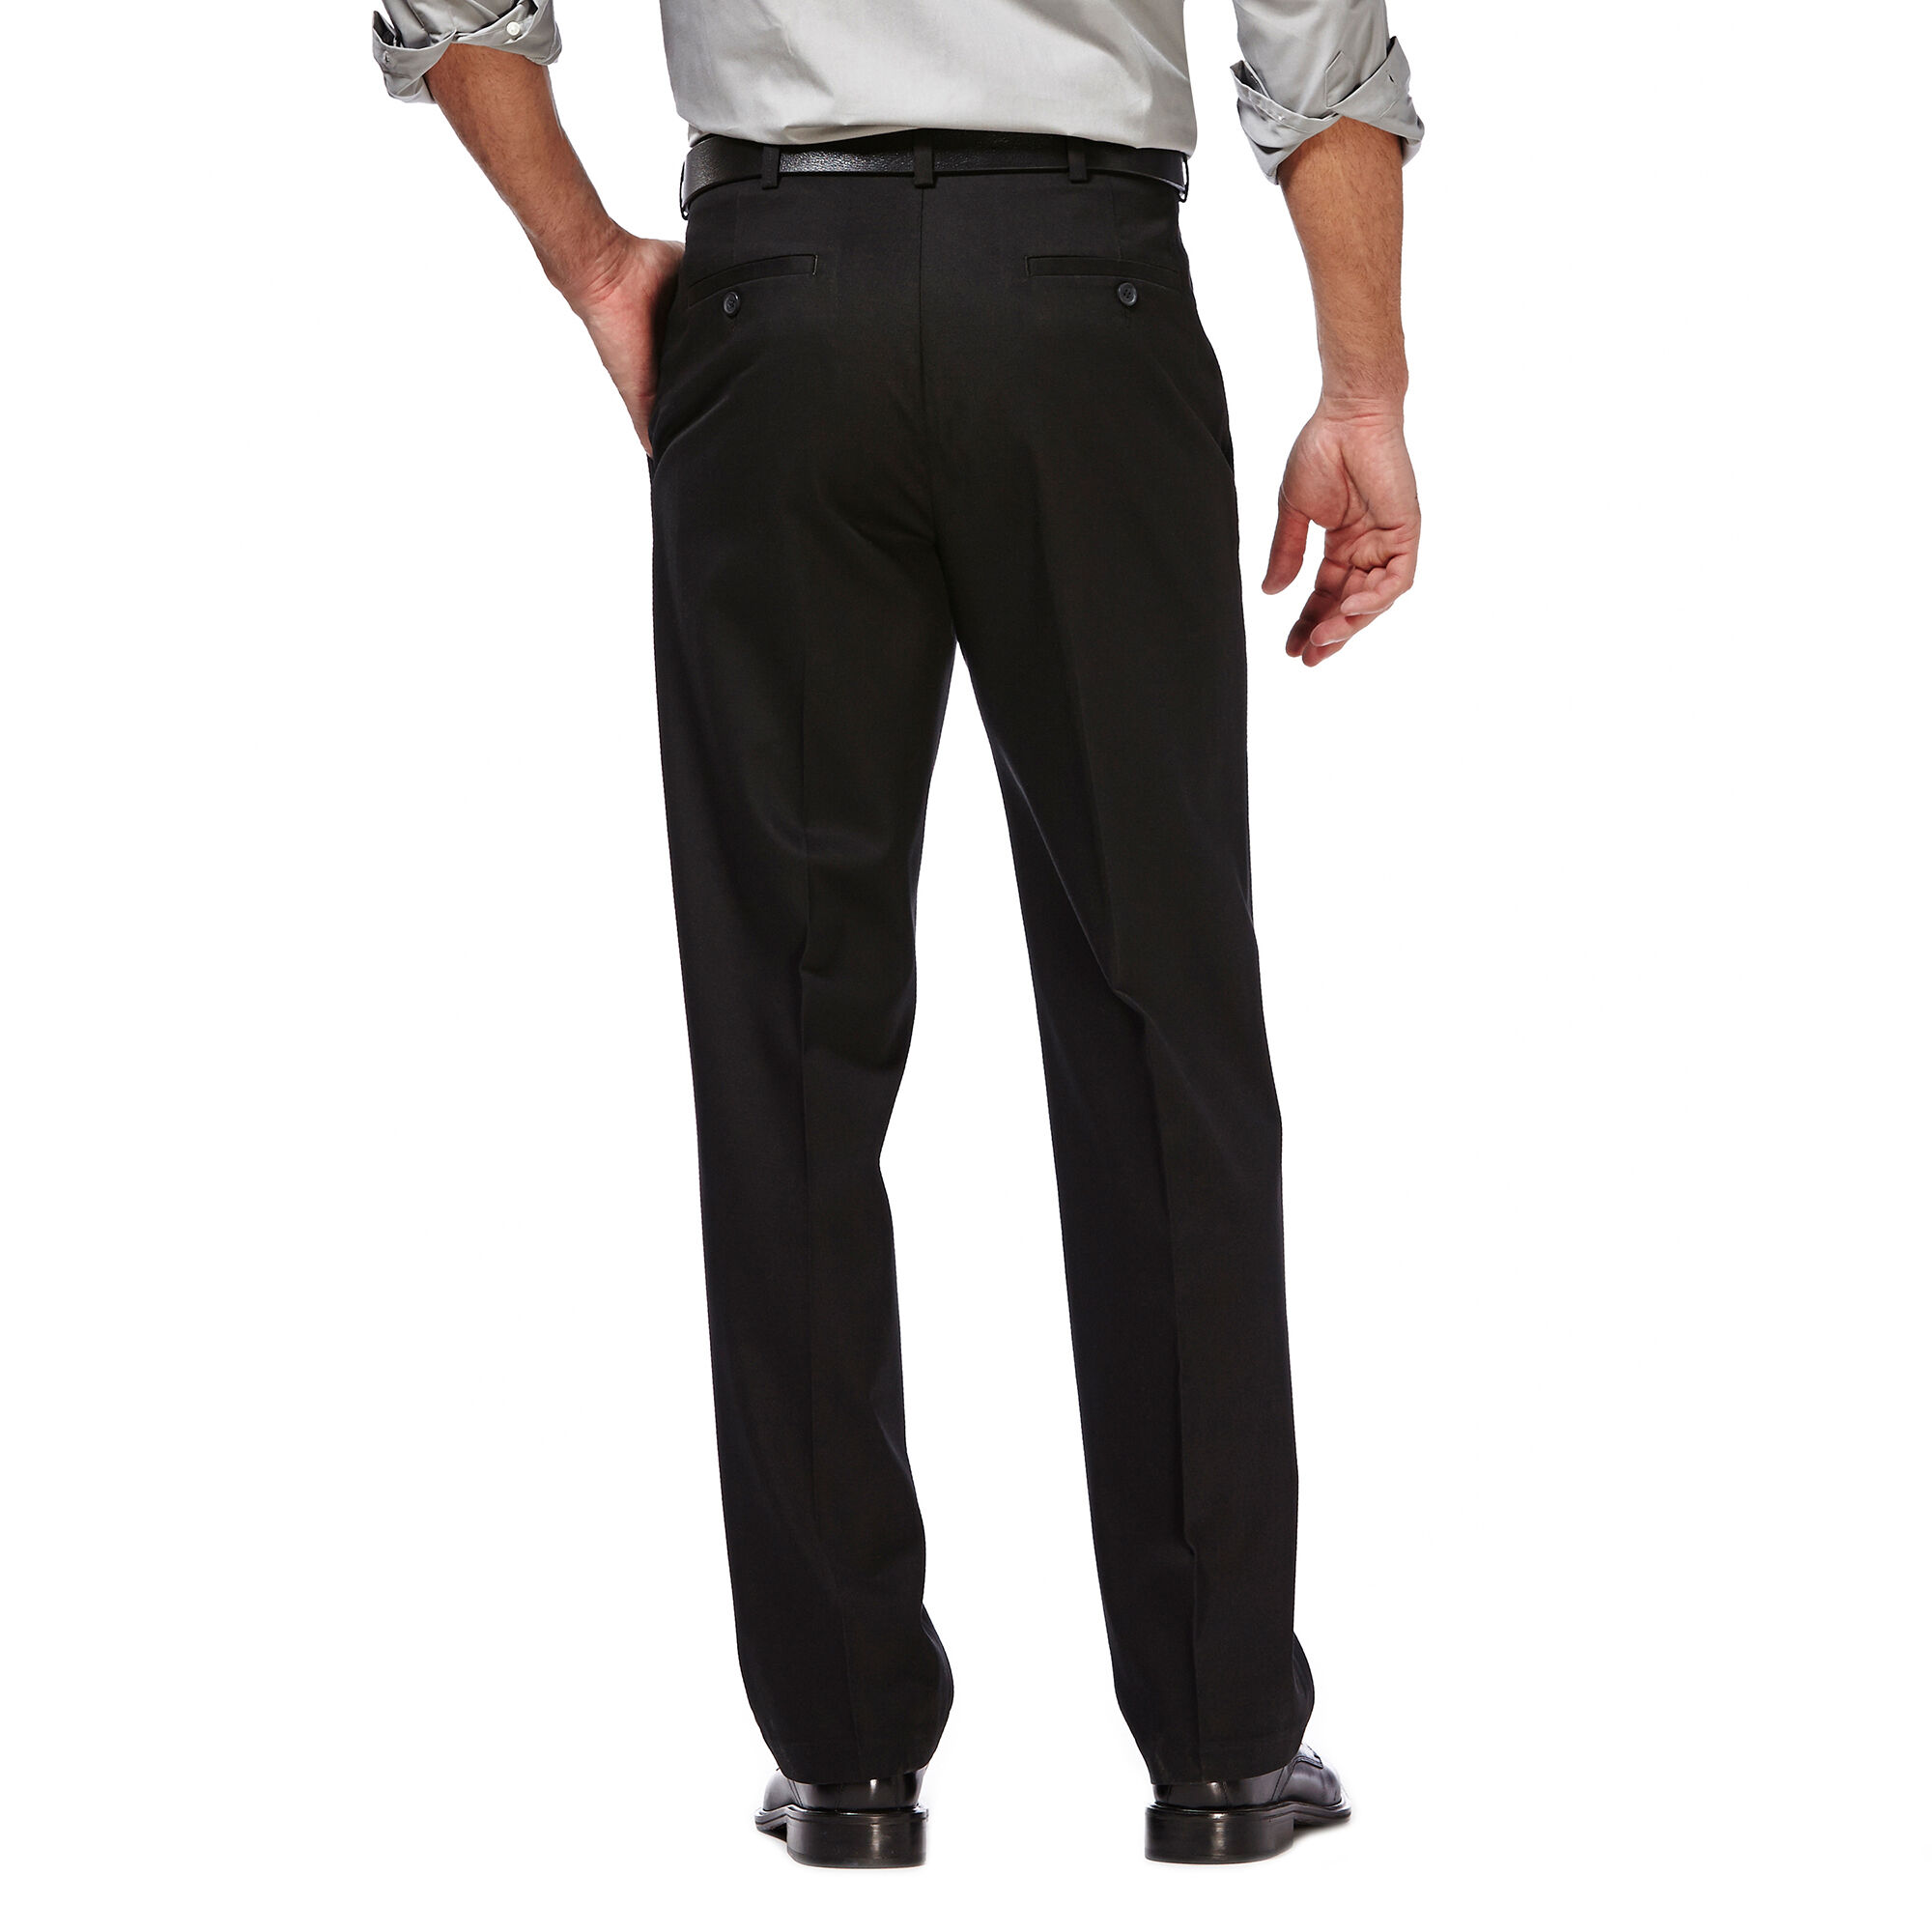 C&B Mens Premium No Iron Microfiber Classic Fit Flat Front Pants GRAY  32x30 